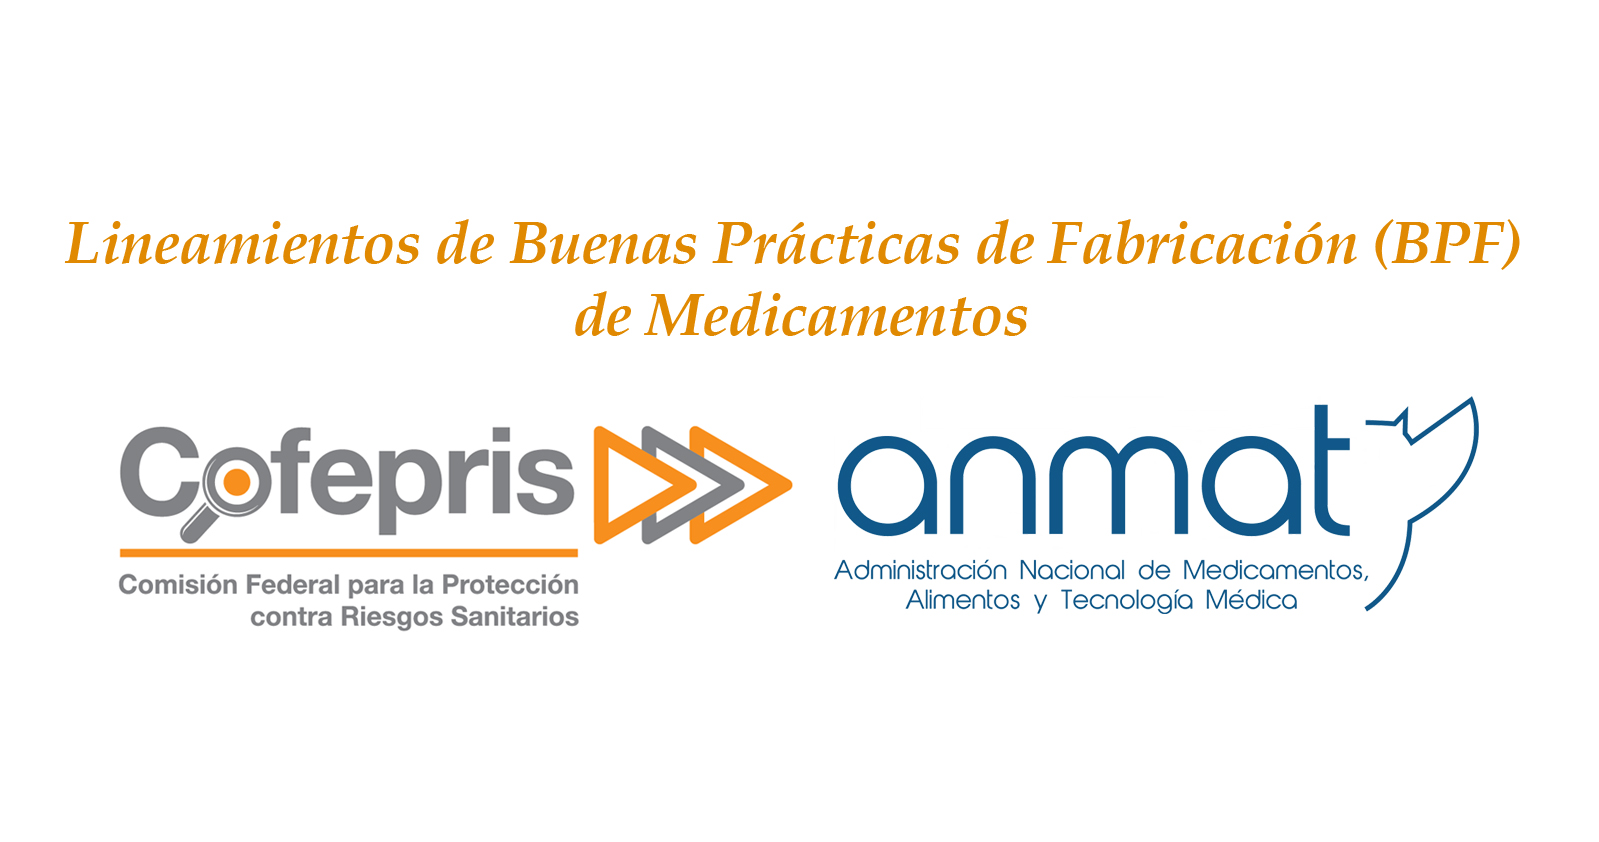 La ANMAT y la COFEPRIS han acordado un mecanismo conjunto que permite realizar el intercambio de actas o informes de inspección de BPF de laboratorios fabricantes de medicamentos ubicados en México o Argentina